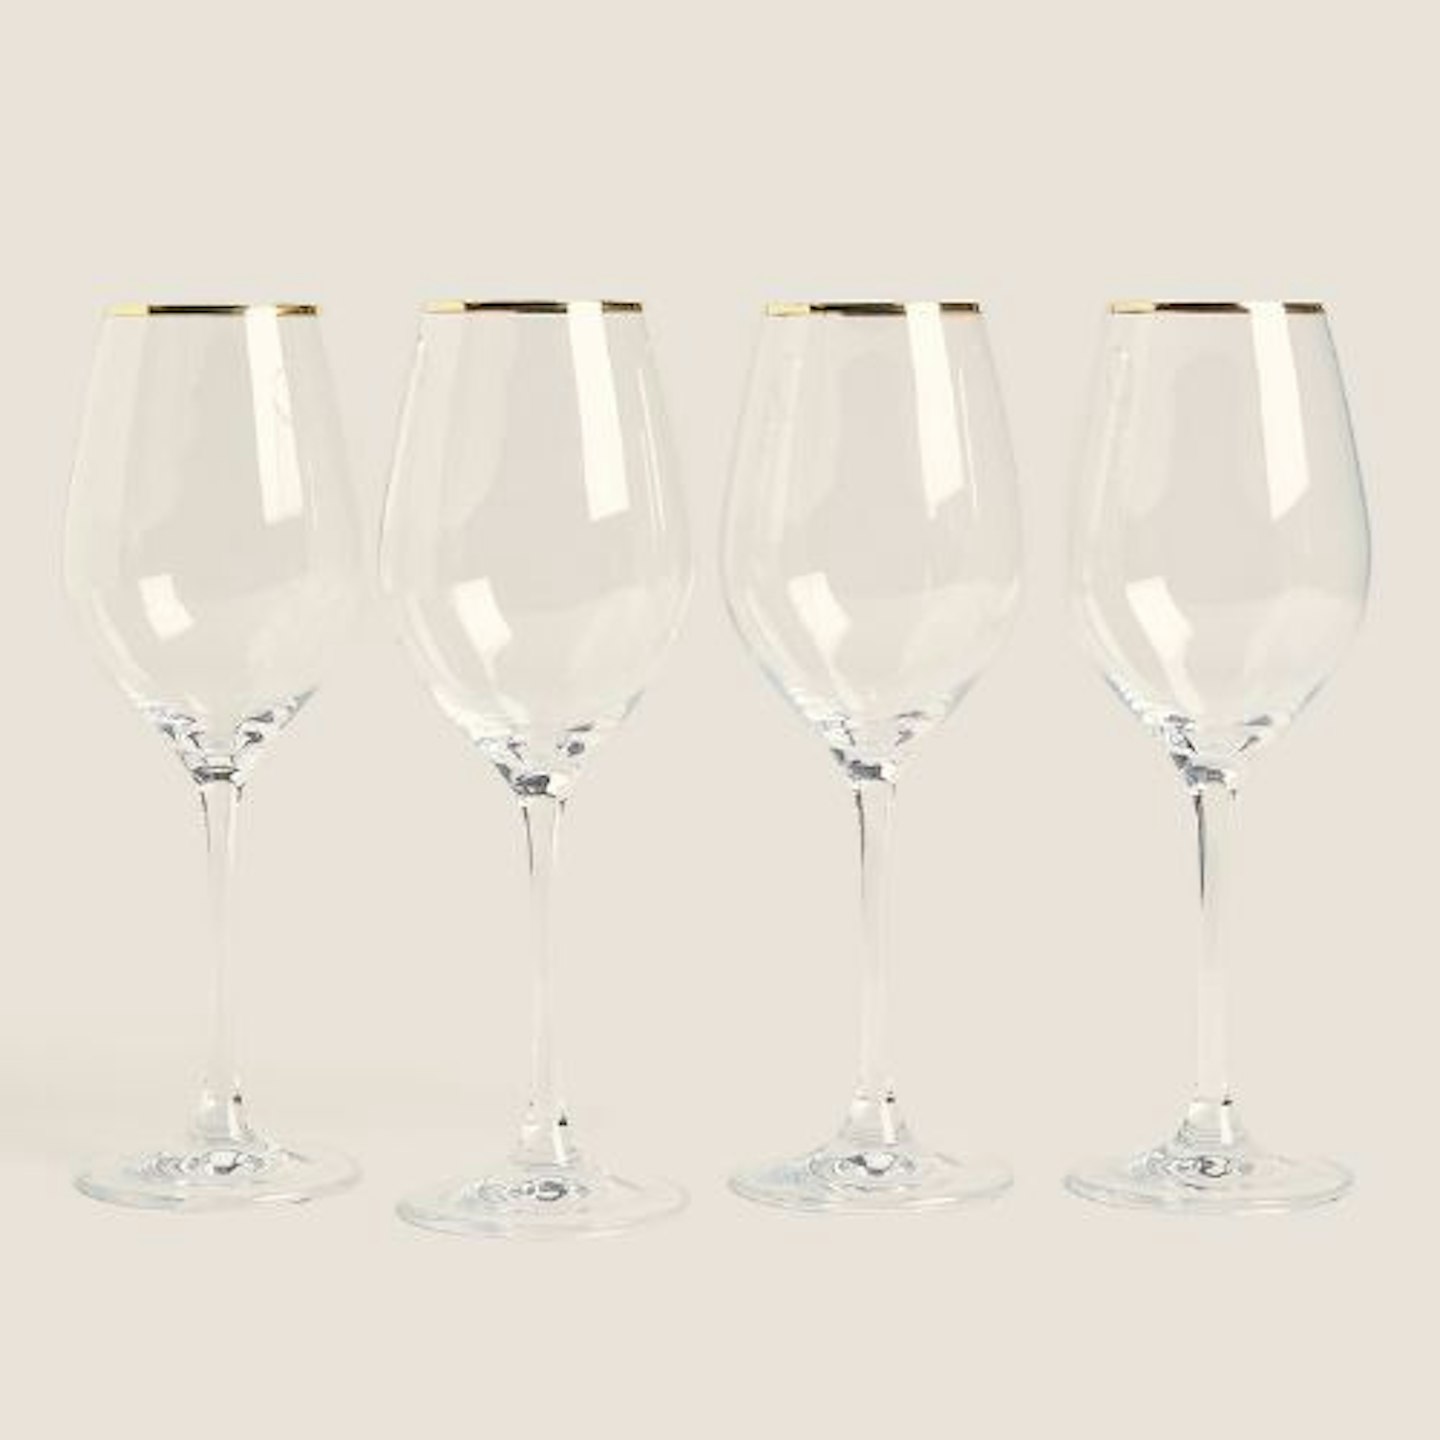 Glassware: 4 M&S Gold Rim Wine Glasses